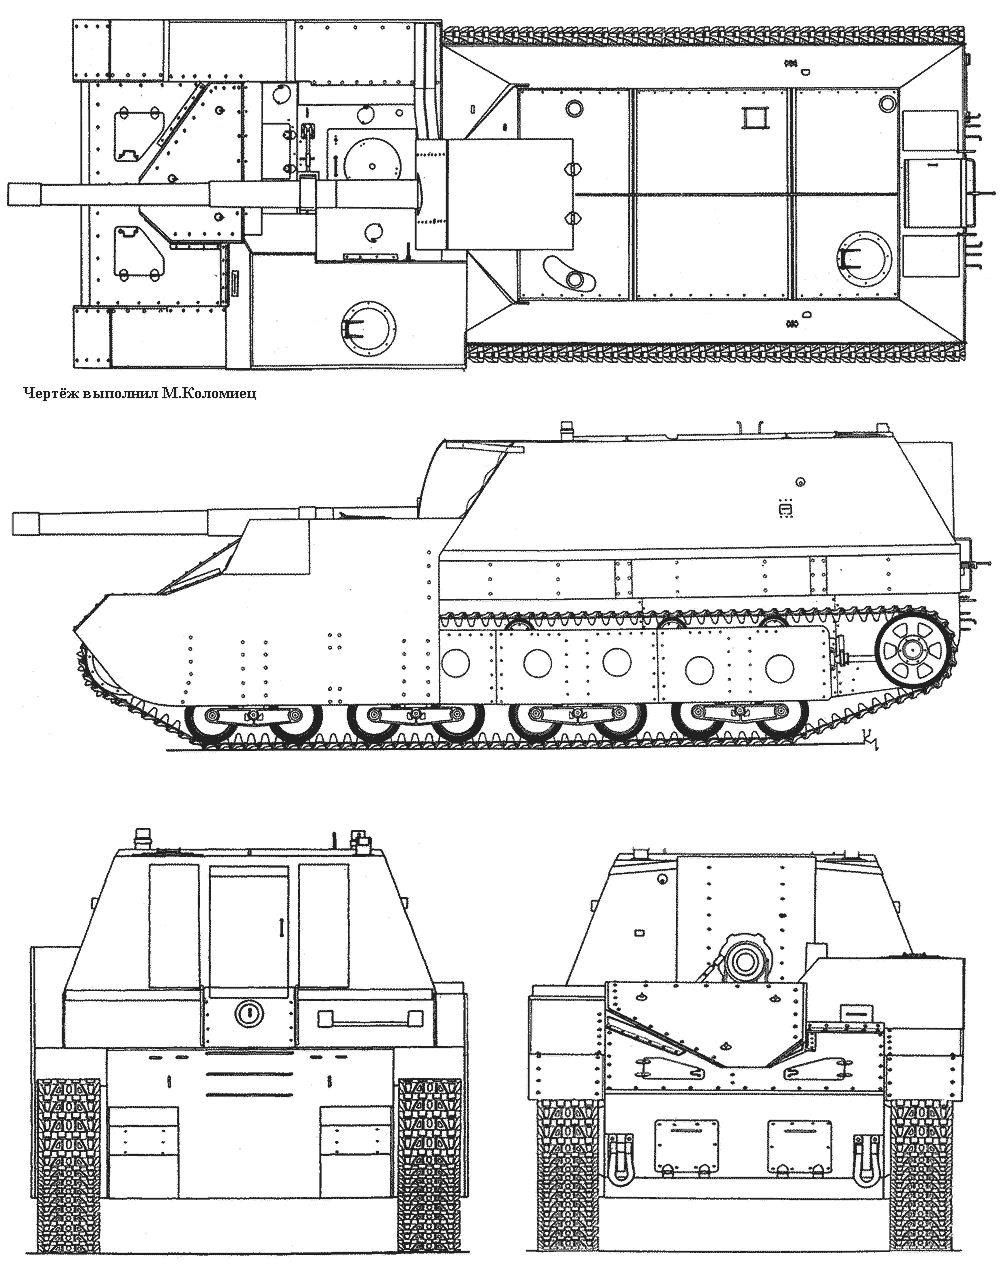 SU-14 blueprint